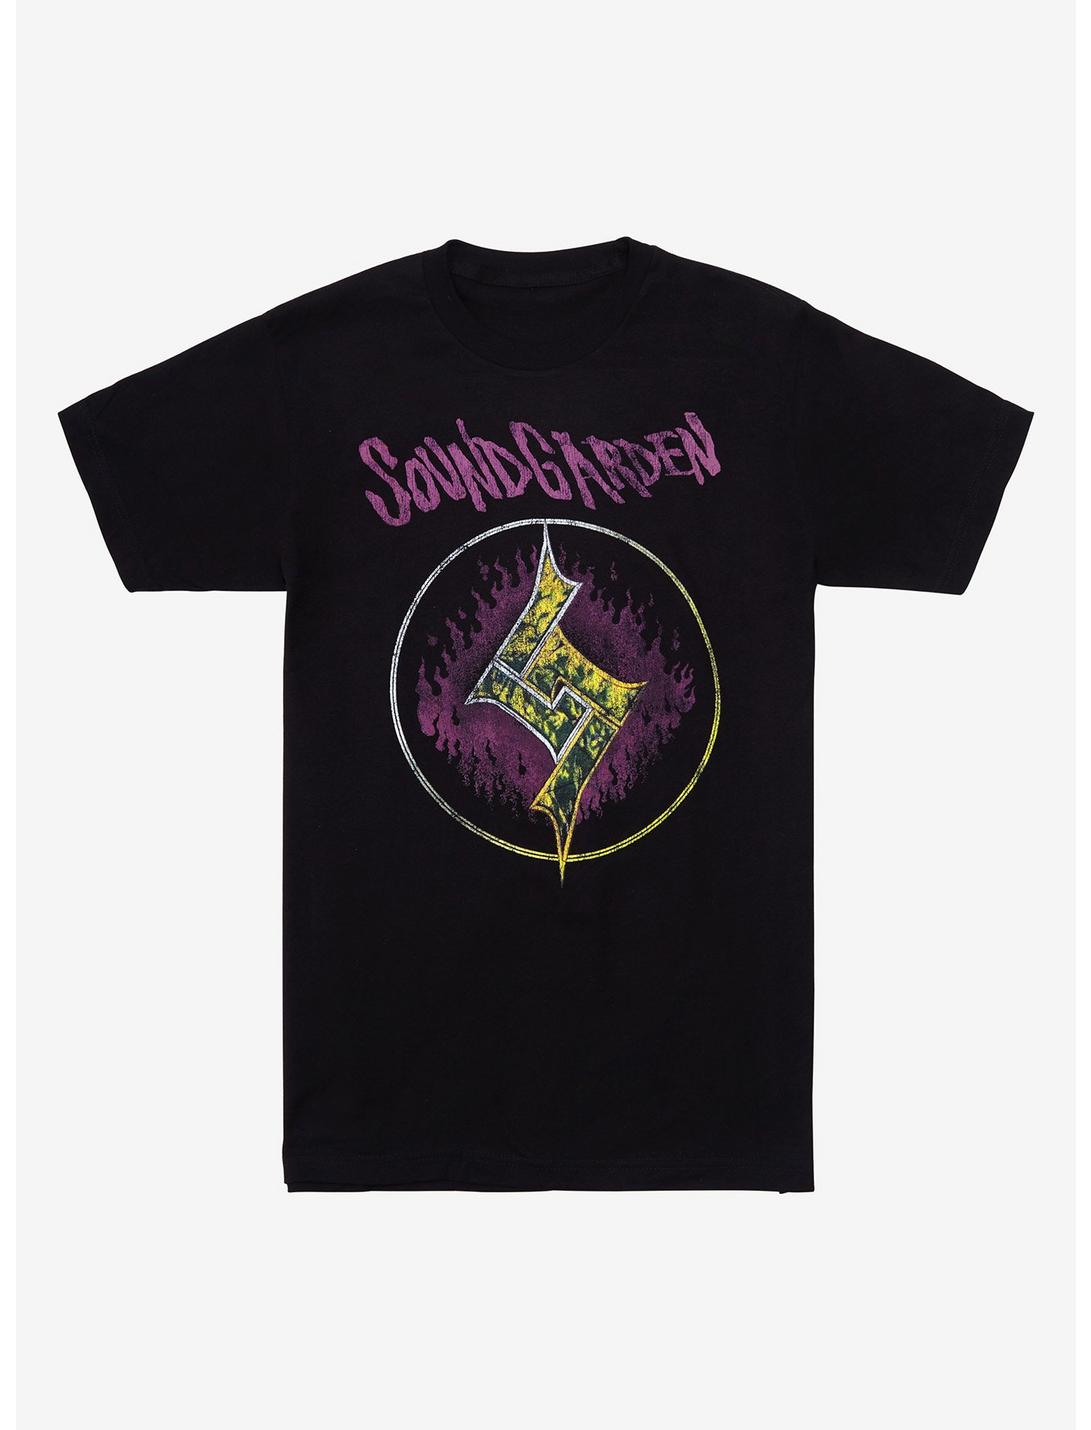 Soundgarden Get On The Snake Tour 1990 T-Shirt, BLACK, hi-res